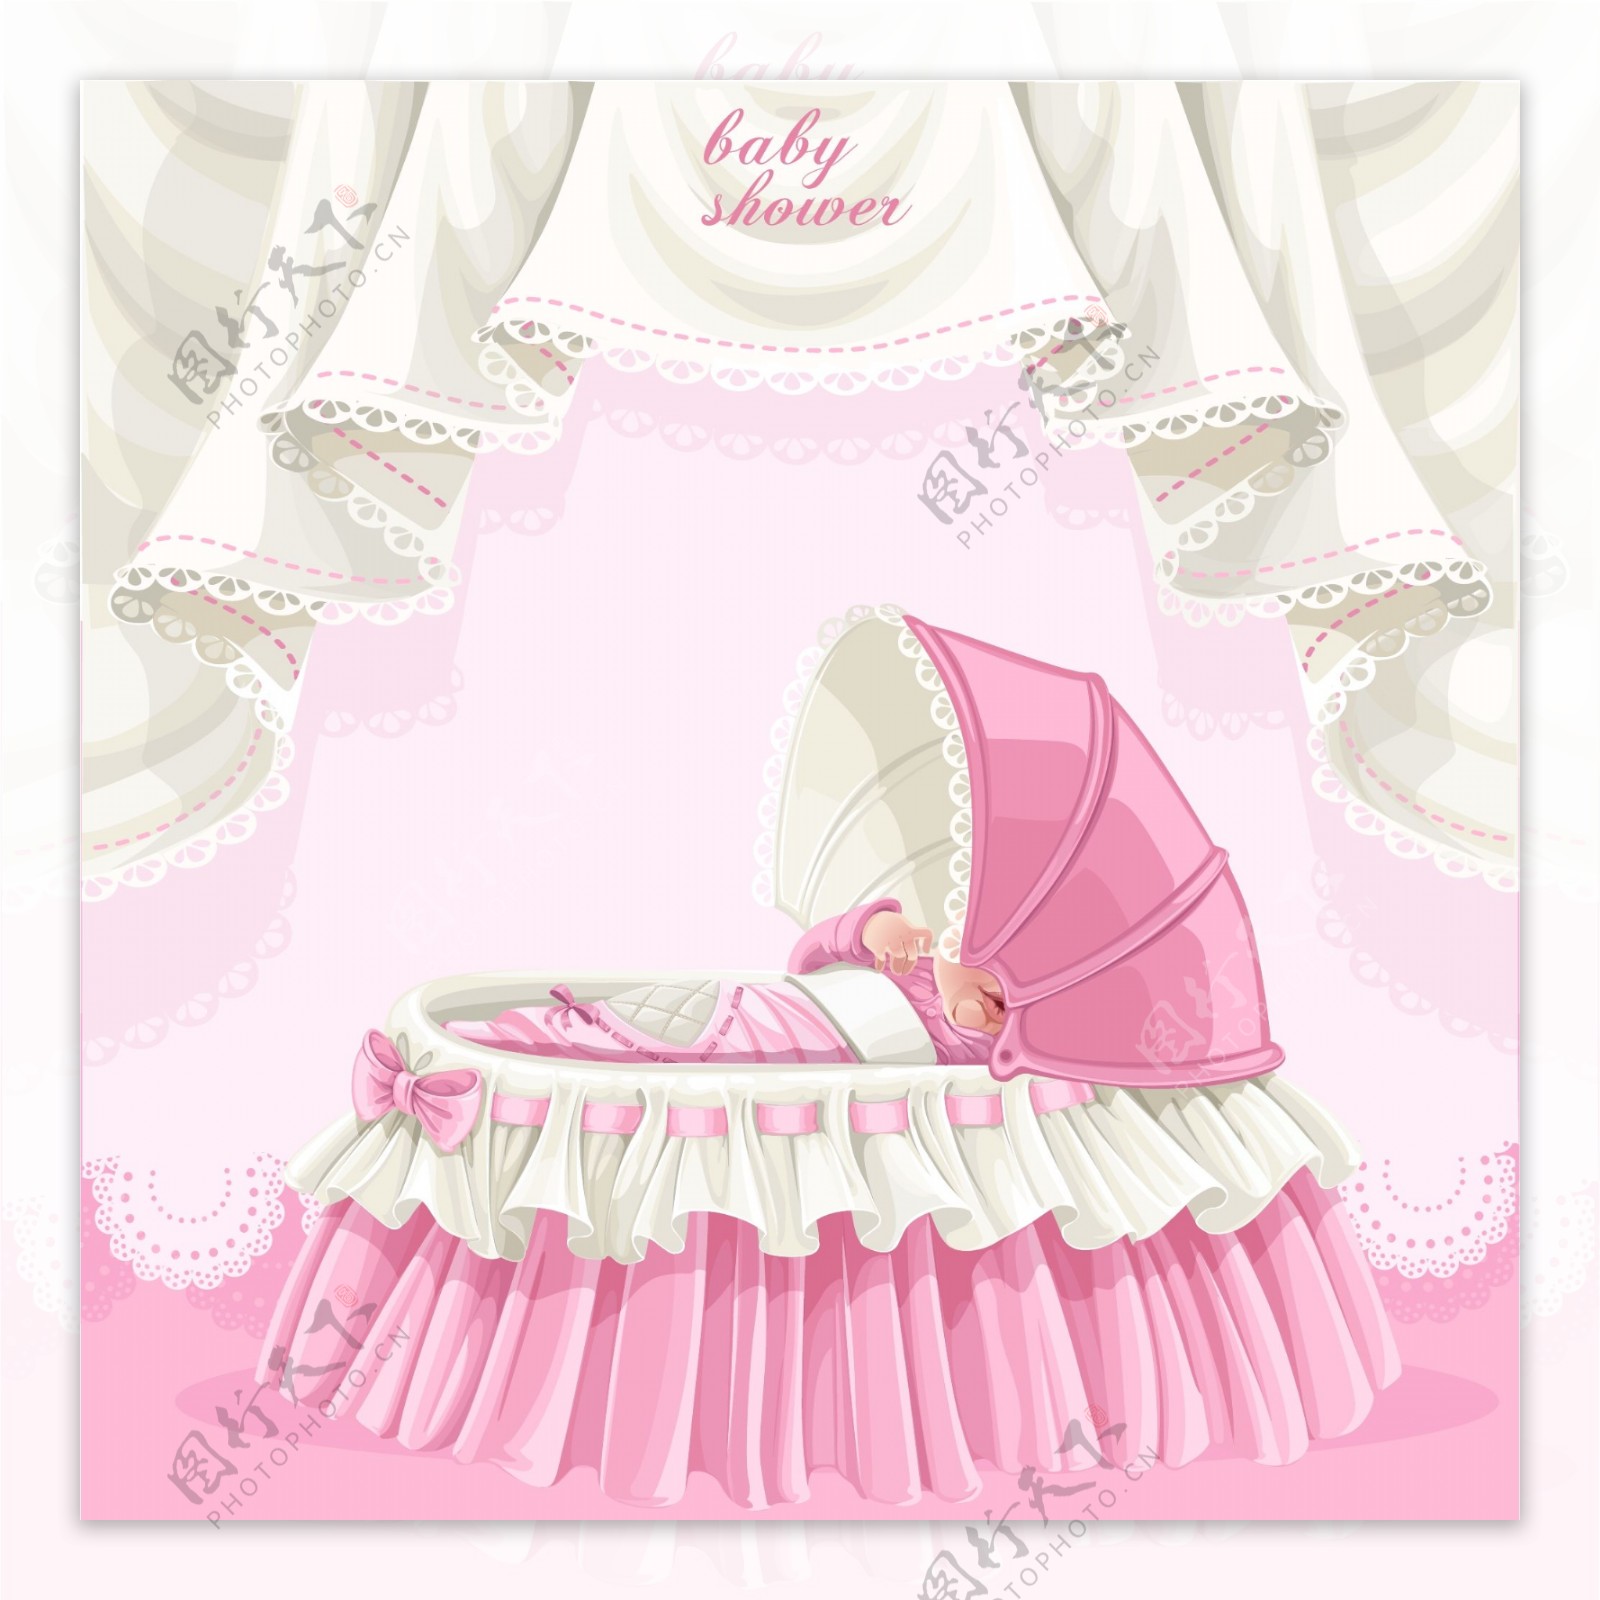 粉色婴儿衣服用品矢量图片